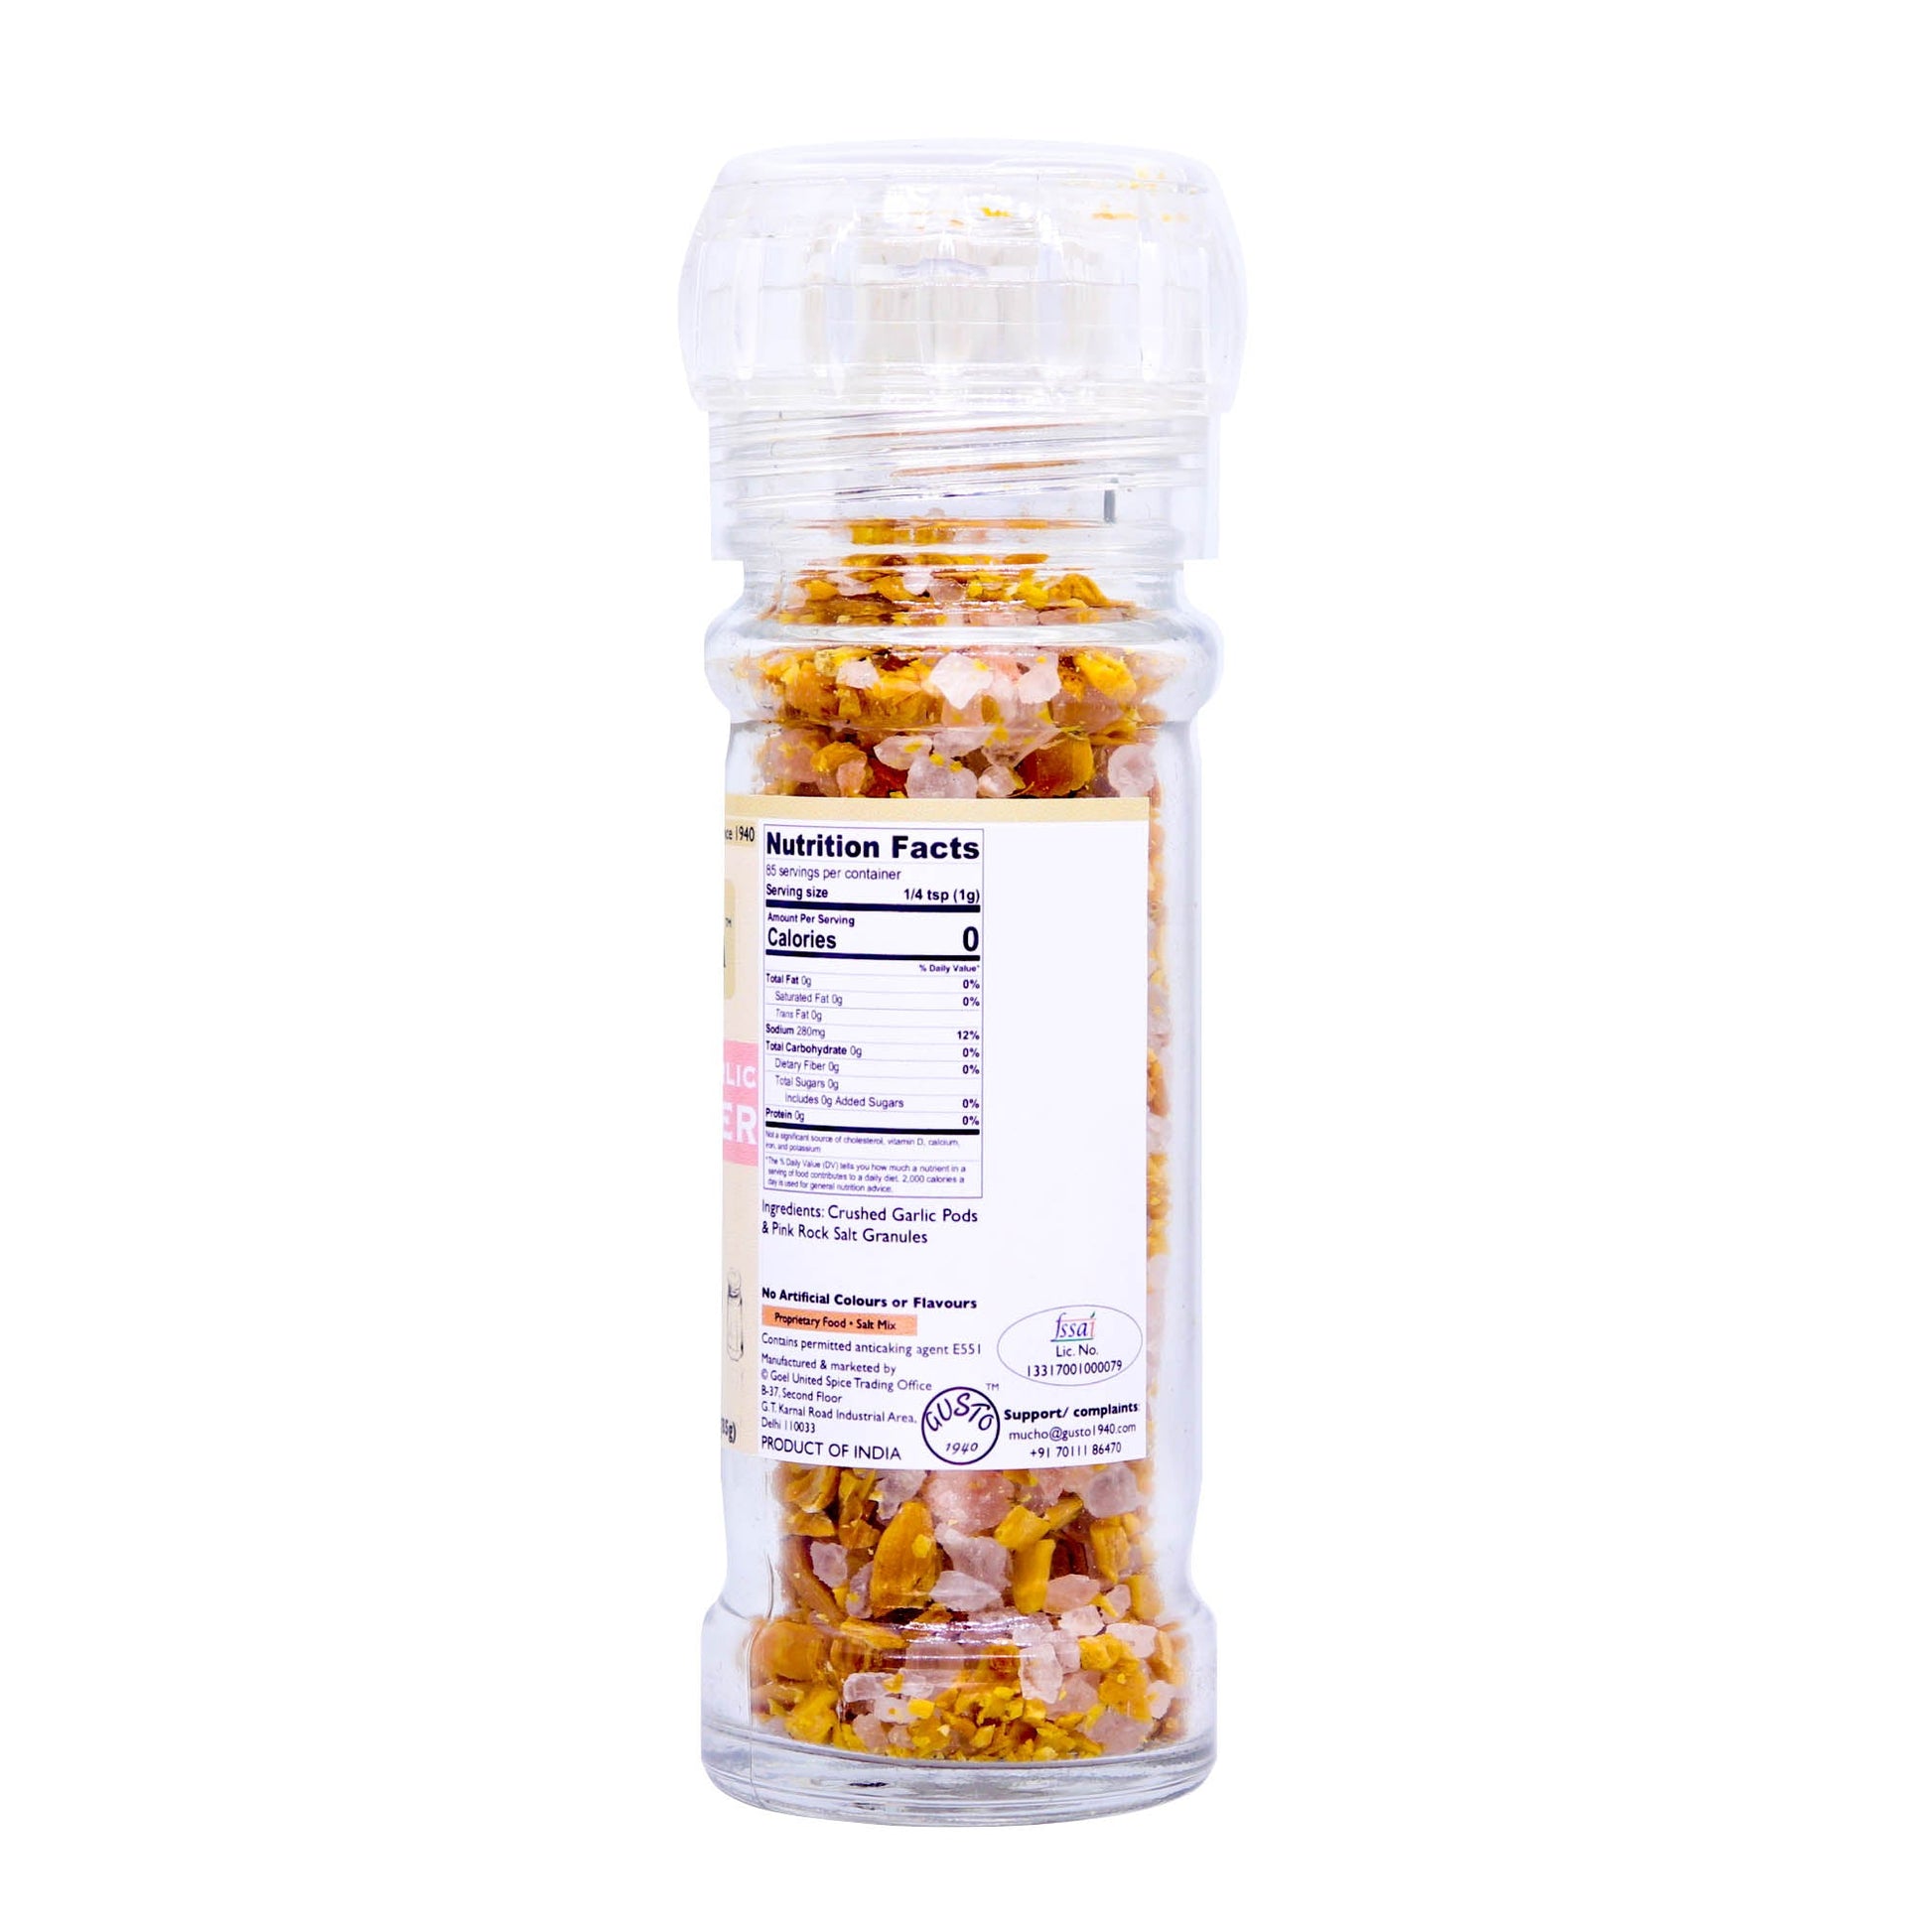 Garlic Salt 85g Grinder Bottle - Tassyam Organics